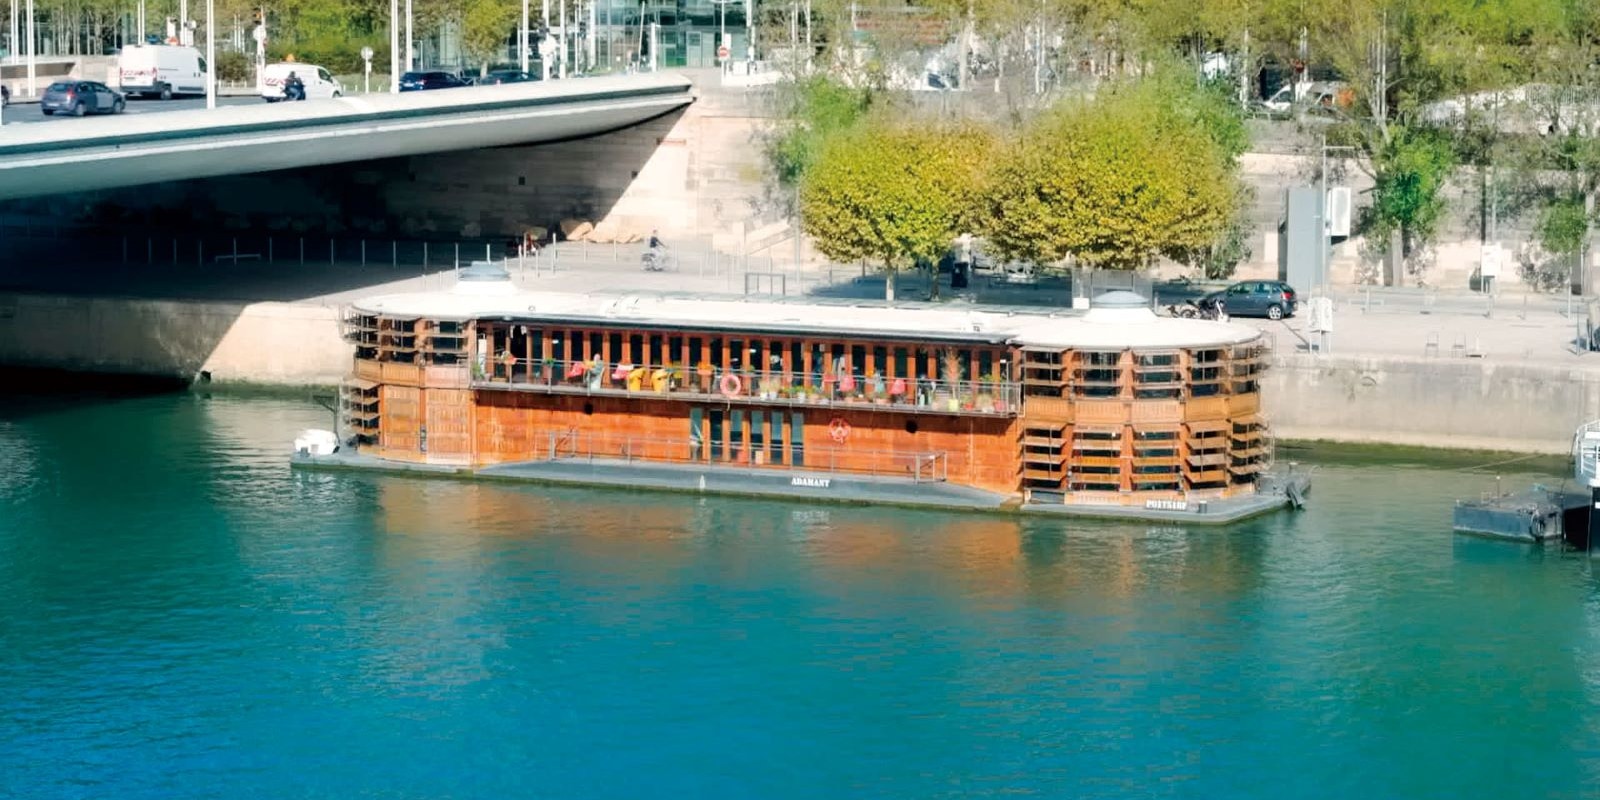 【写真】映画の一場面。セーヌ川に木造建築の船〈アダマン〉が浮かんでいる様子